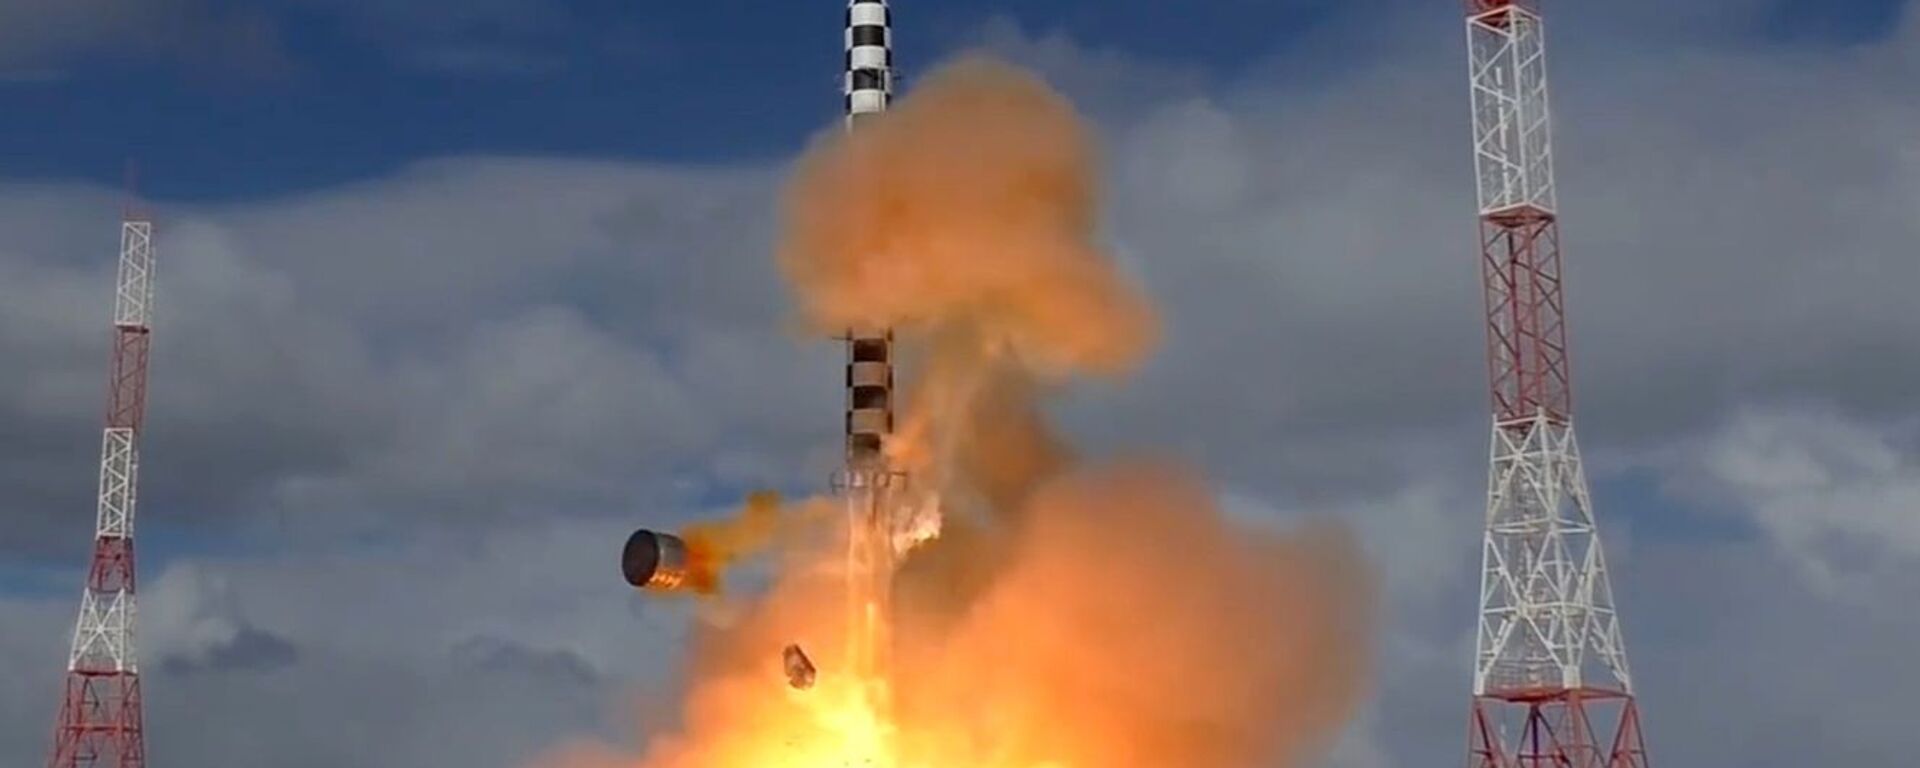 Запуск ракеты «Сармат» с космодрома «Плесецк» - Sputnik Latvija, 1920, 18.02.2021